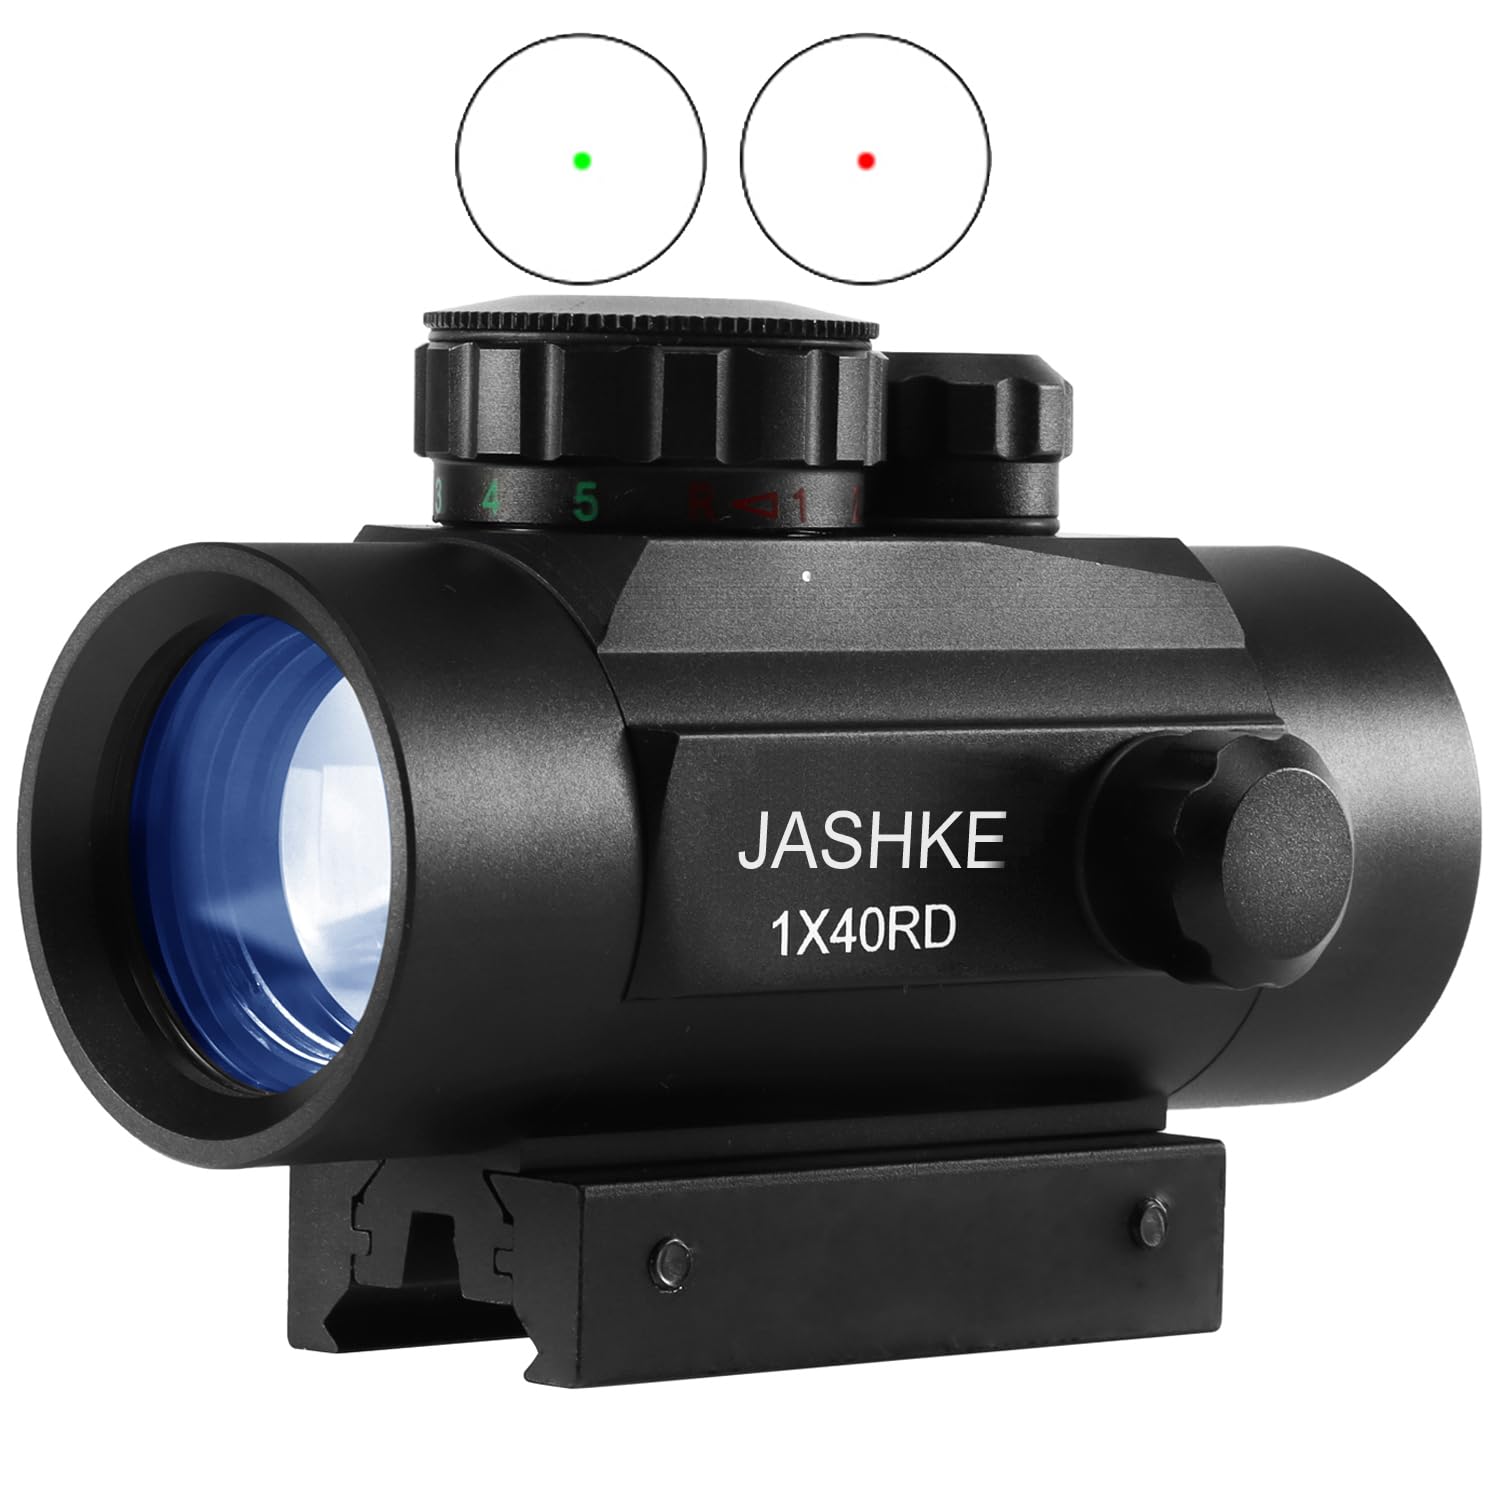 JASHKE Zielfernrohr 1X40 Red Dot Gewehrzielfernrohre Leuchtpunktvisier Rotpunktvisier für 11mm/20mm Schiene mit Montage und Schutzkappe